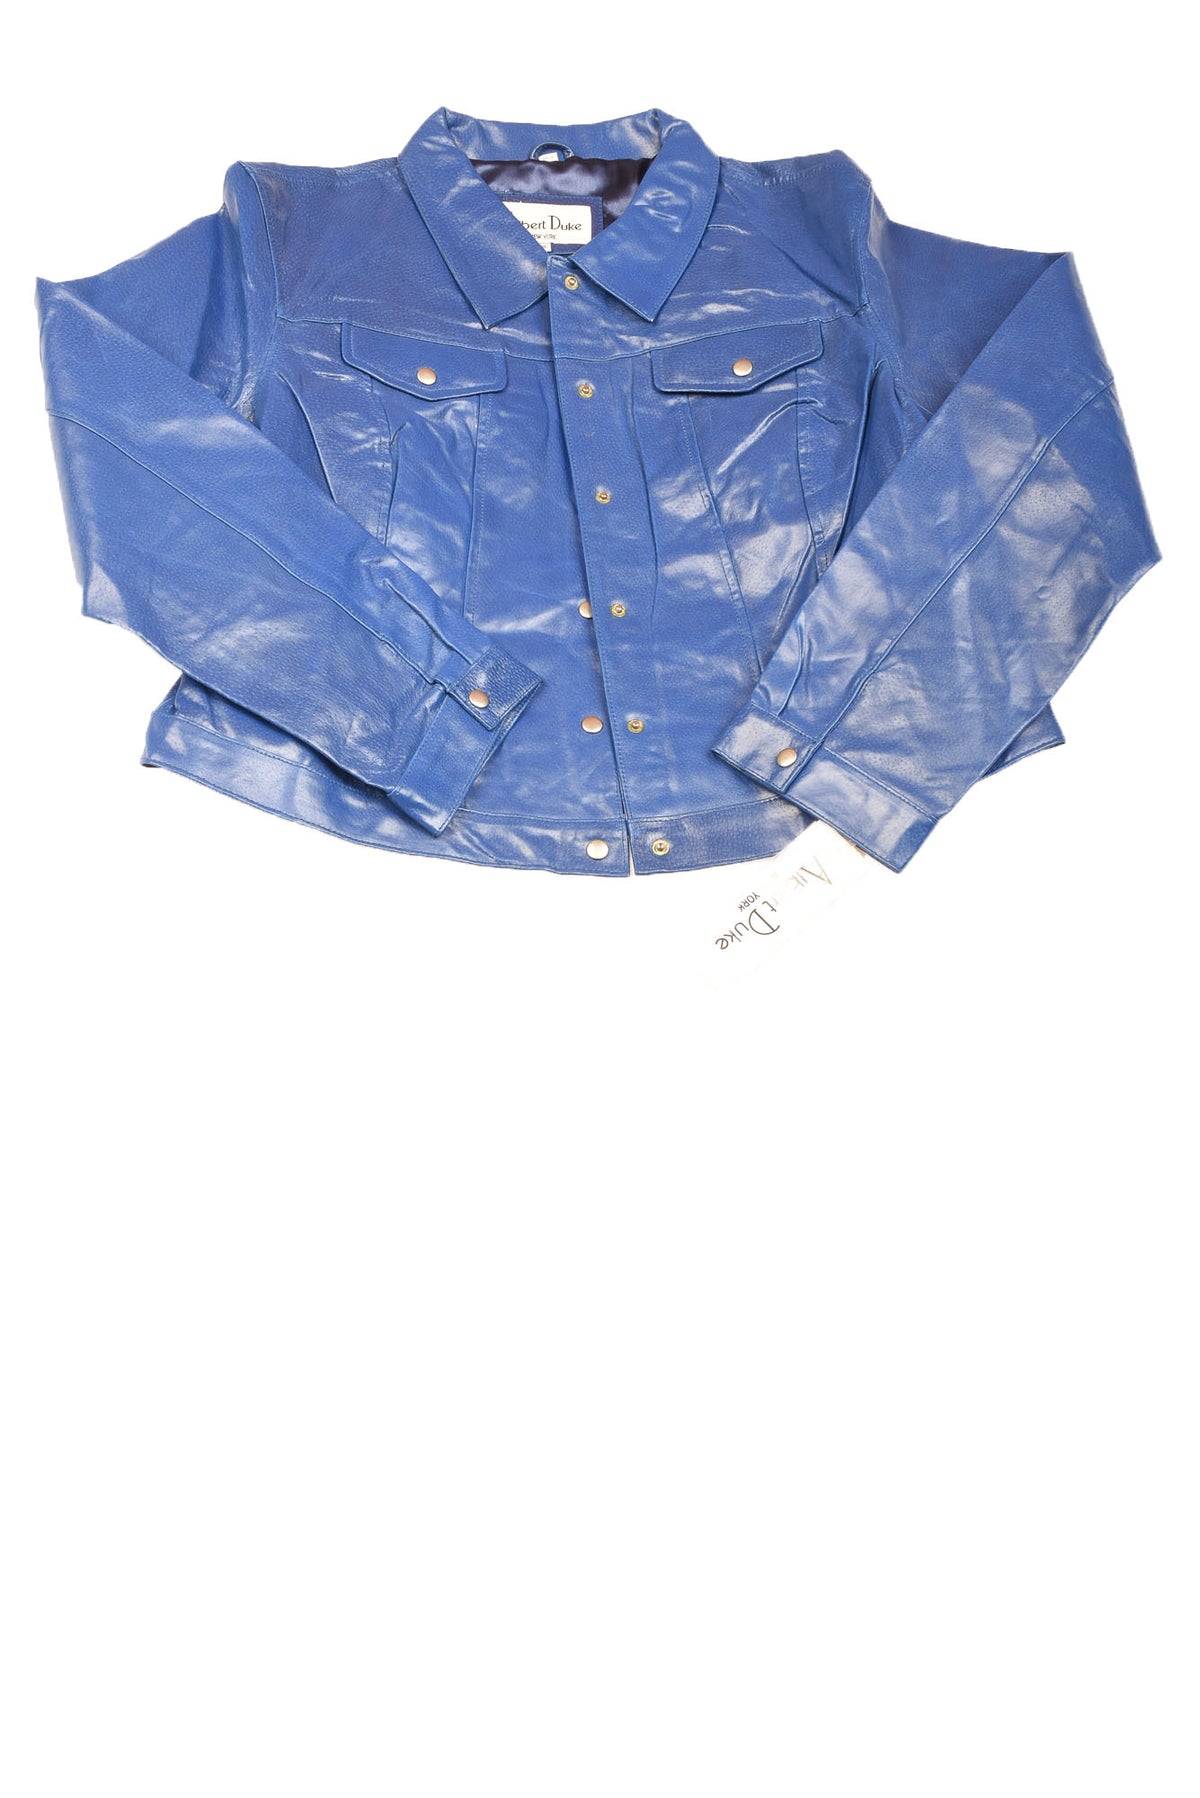 Duke Haband Women Jacket Denim Charcoal Wash Bomber Pockets Size L | eBay